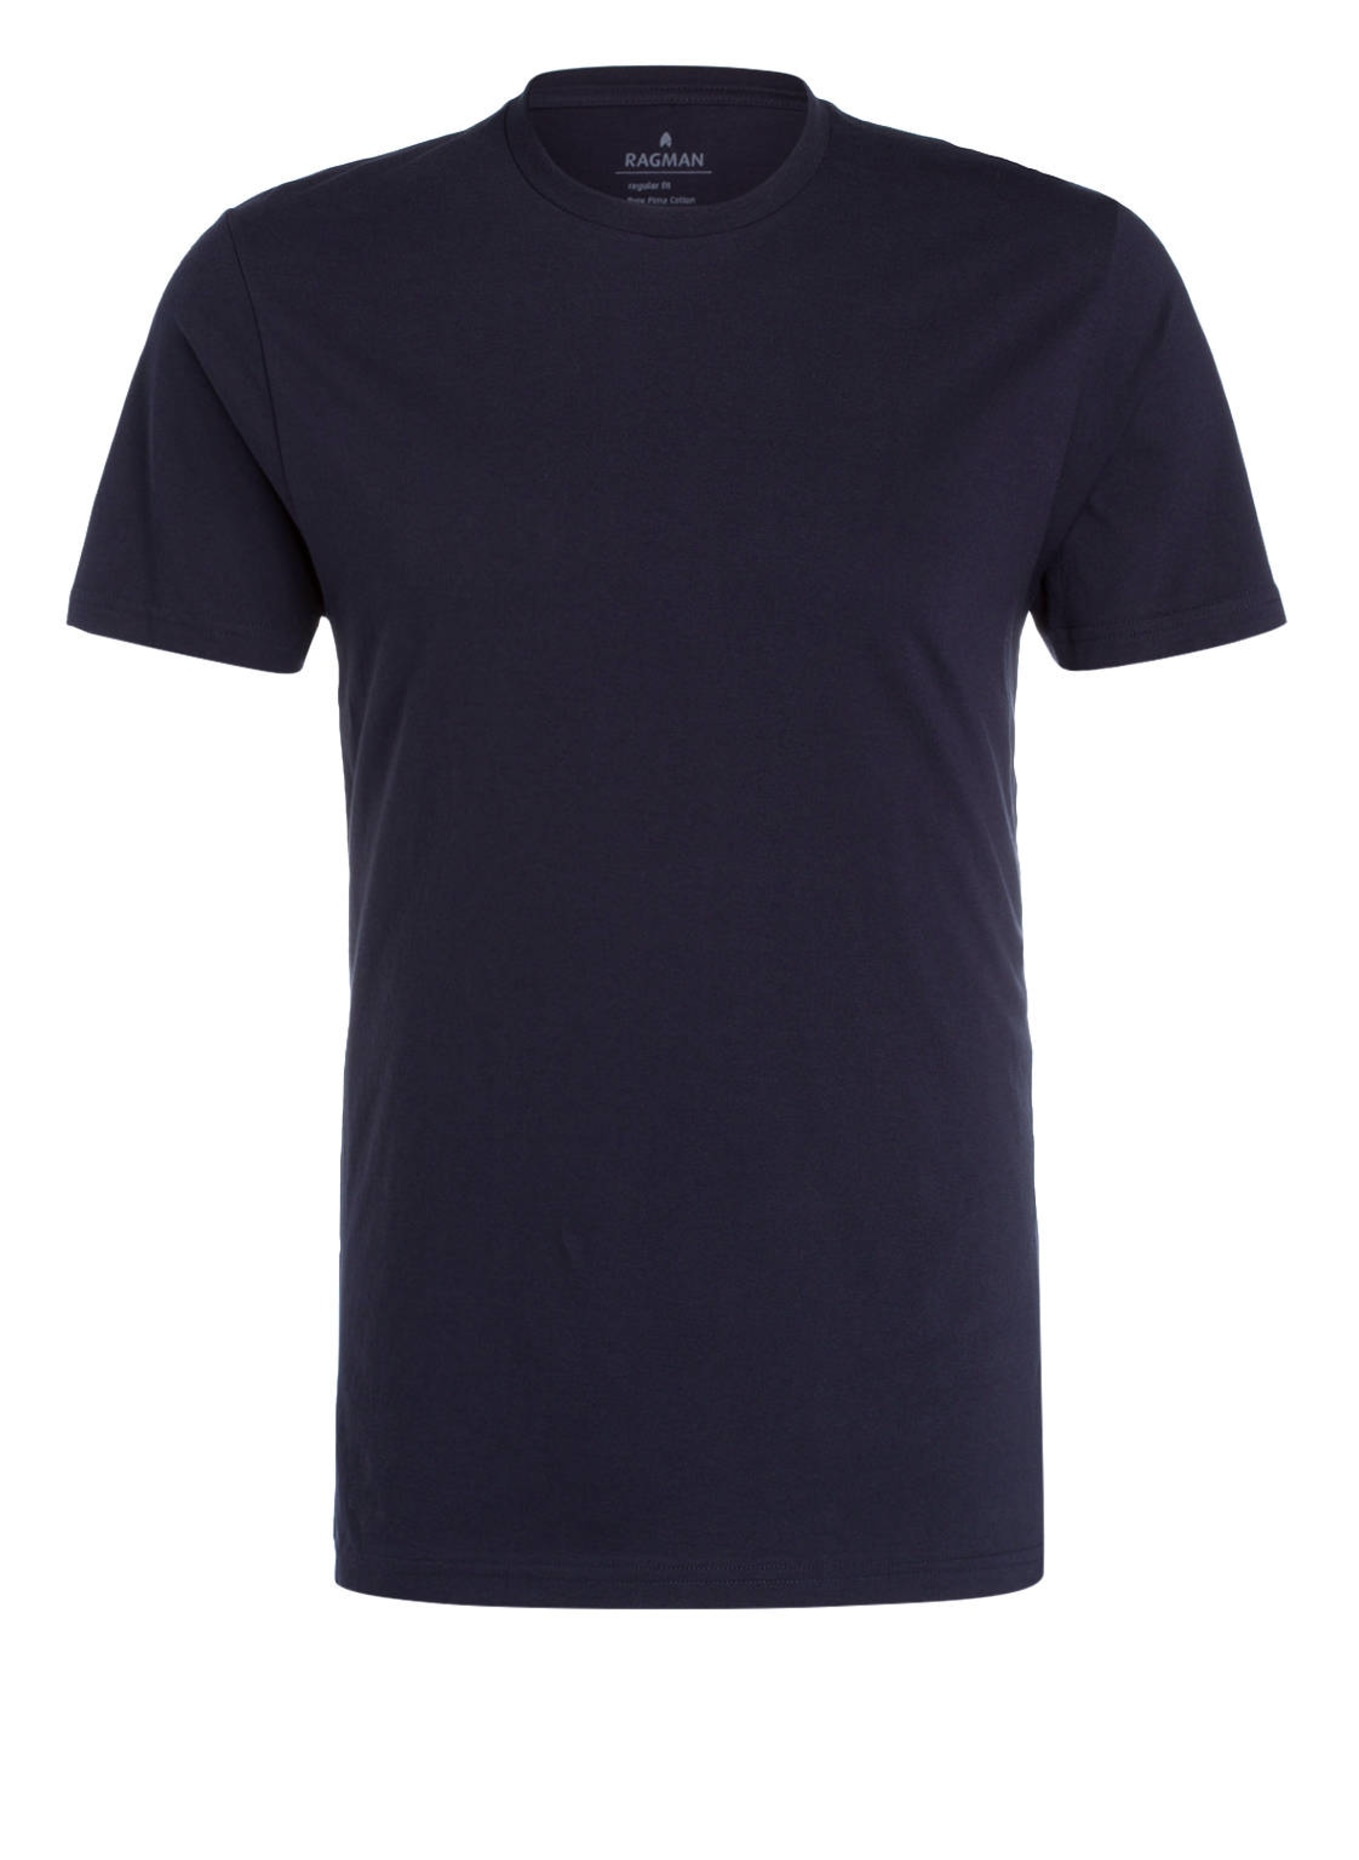 RAGMAN T-Shirt Regular Fit, Farbe: MARINE (Bild 1)